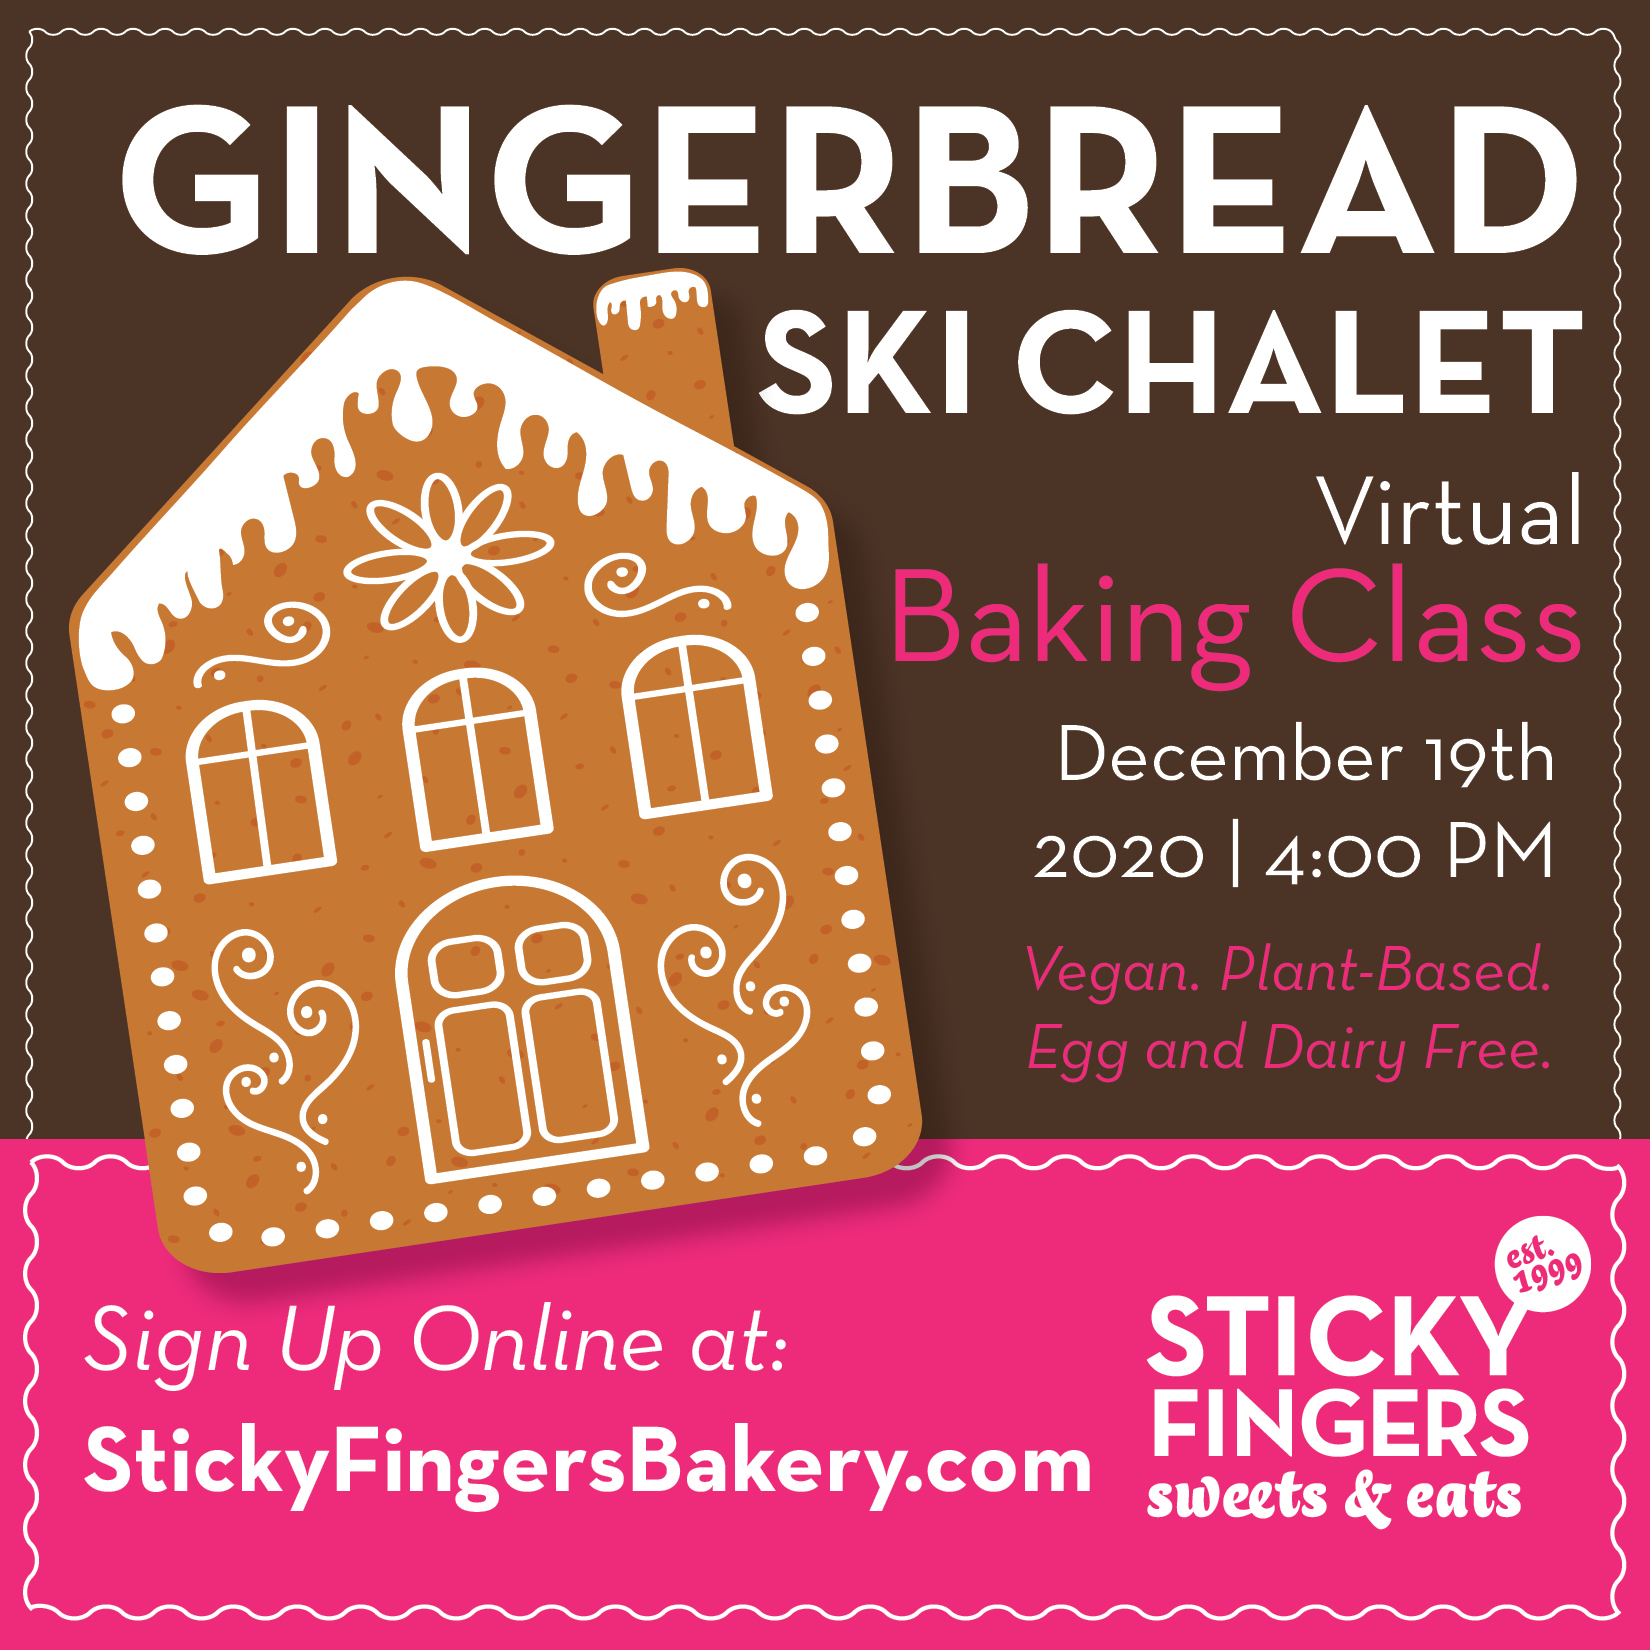 Vega Digital Awards Winner - Sticky Fingers Bakery Online Baking Classes Social Images, Wetherbee Creative & Web LLC